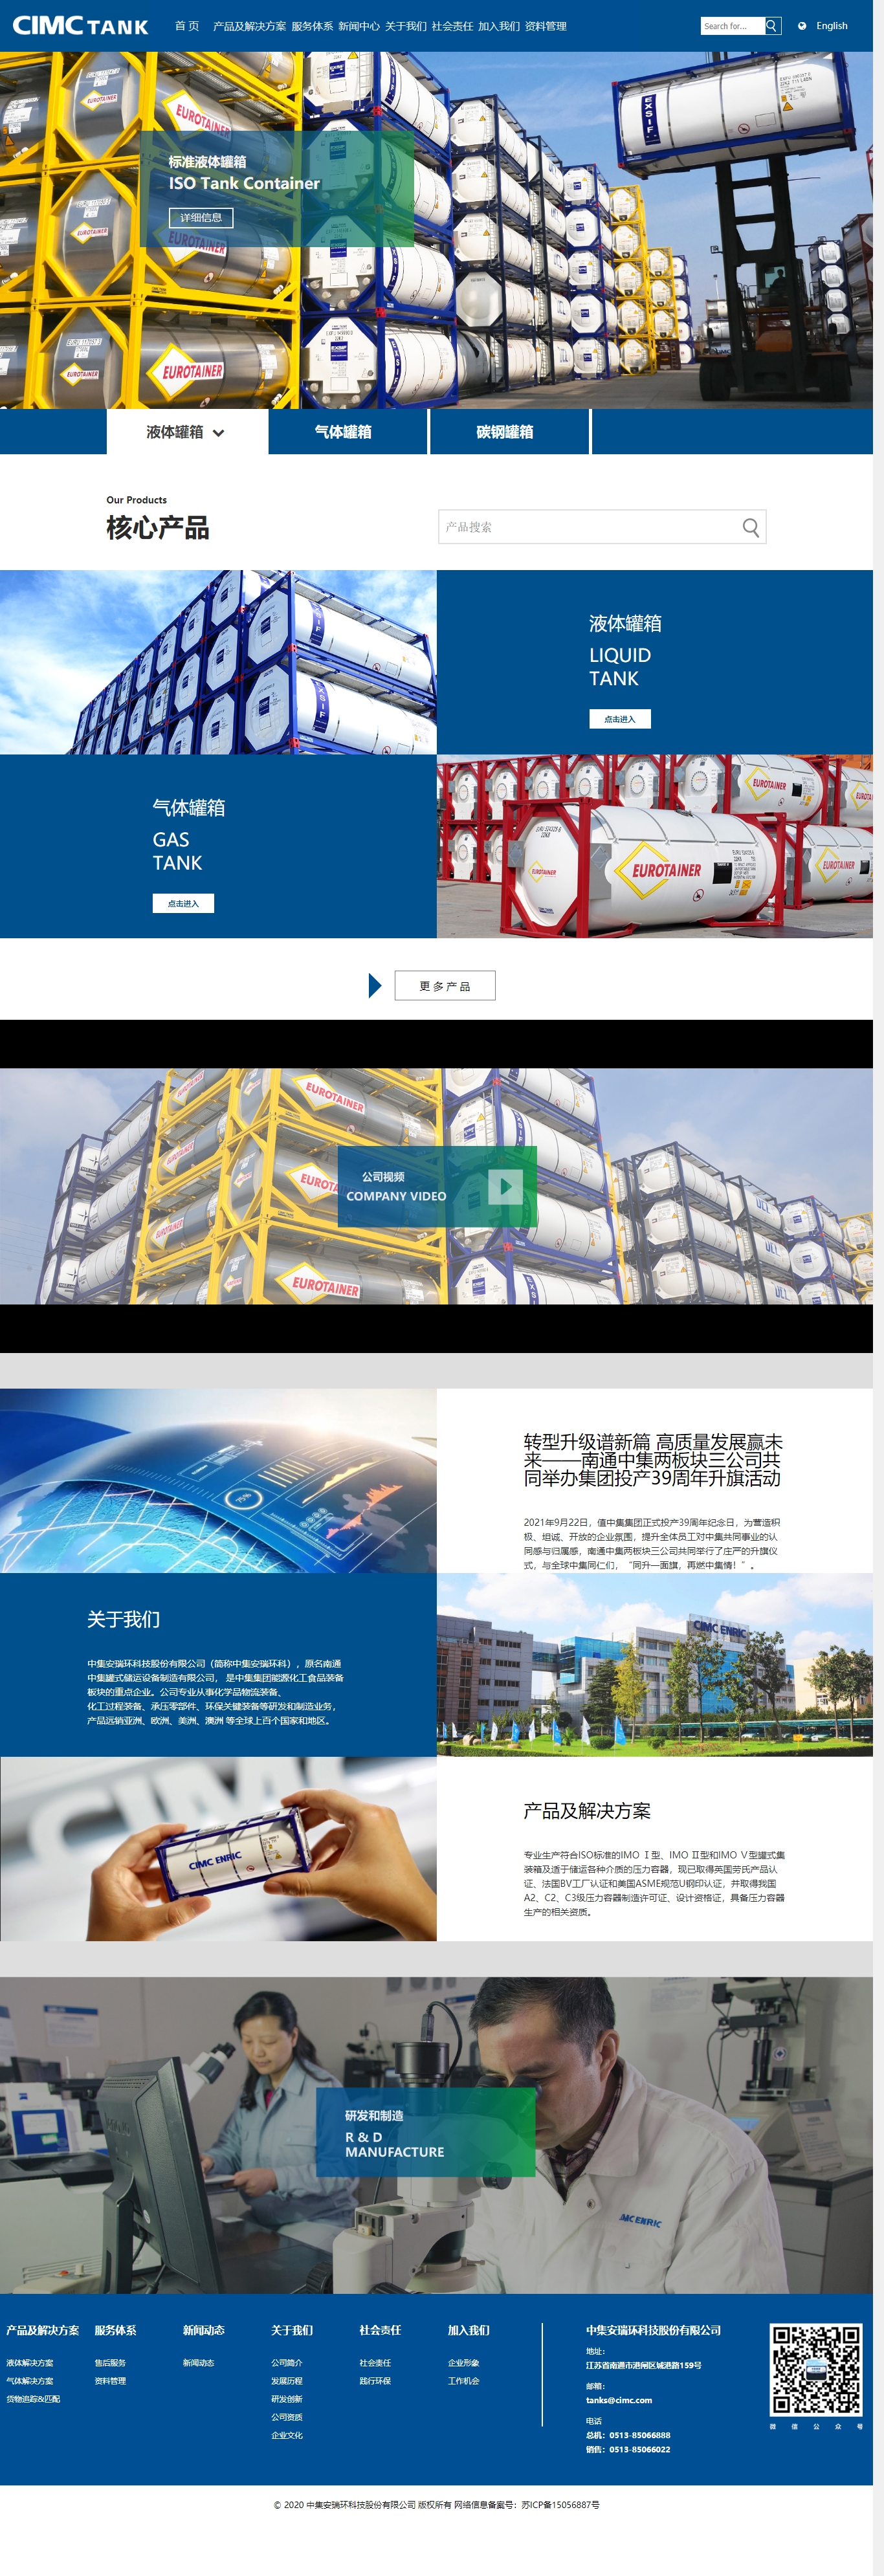 中集安瑞环科技股份有限公司 CIMC Safeway Technologies Co., Ltd_.jpg